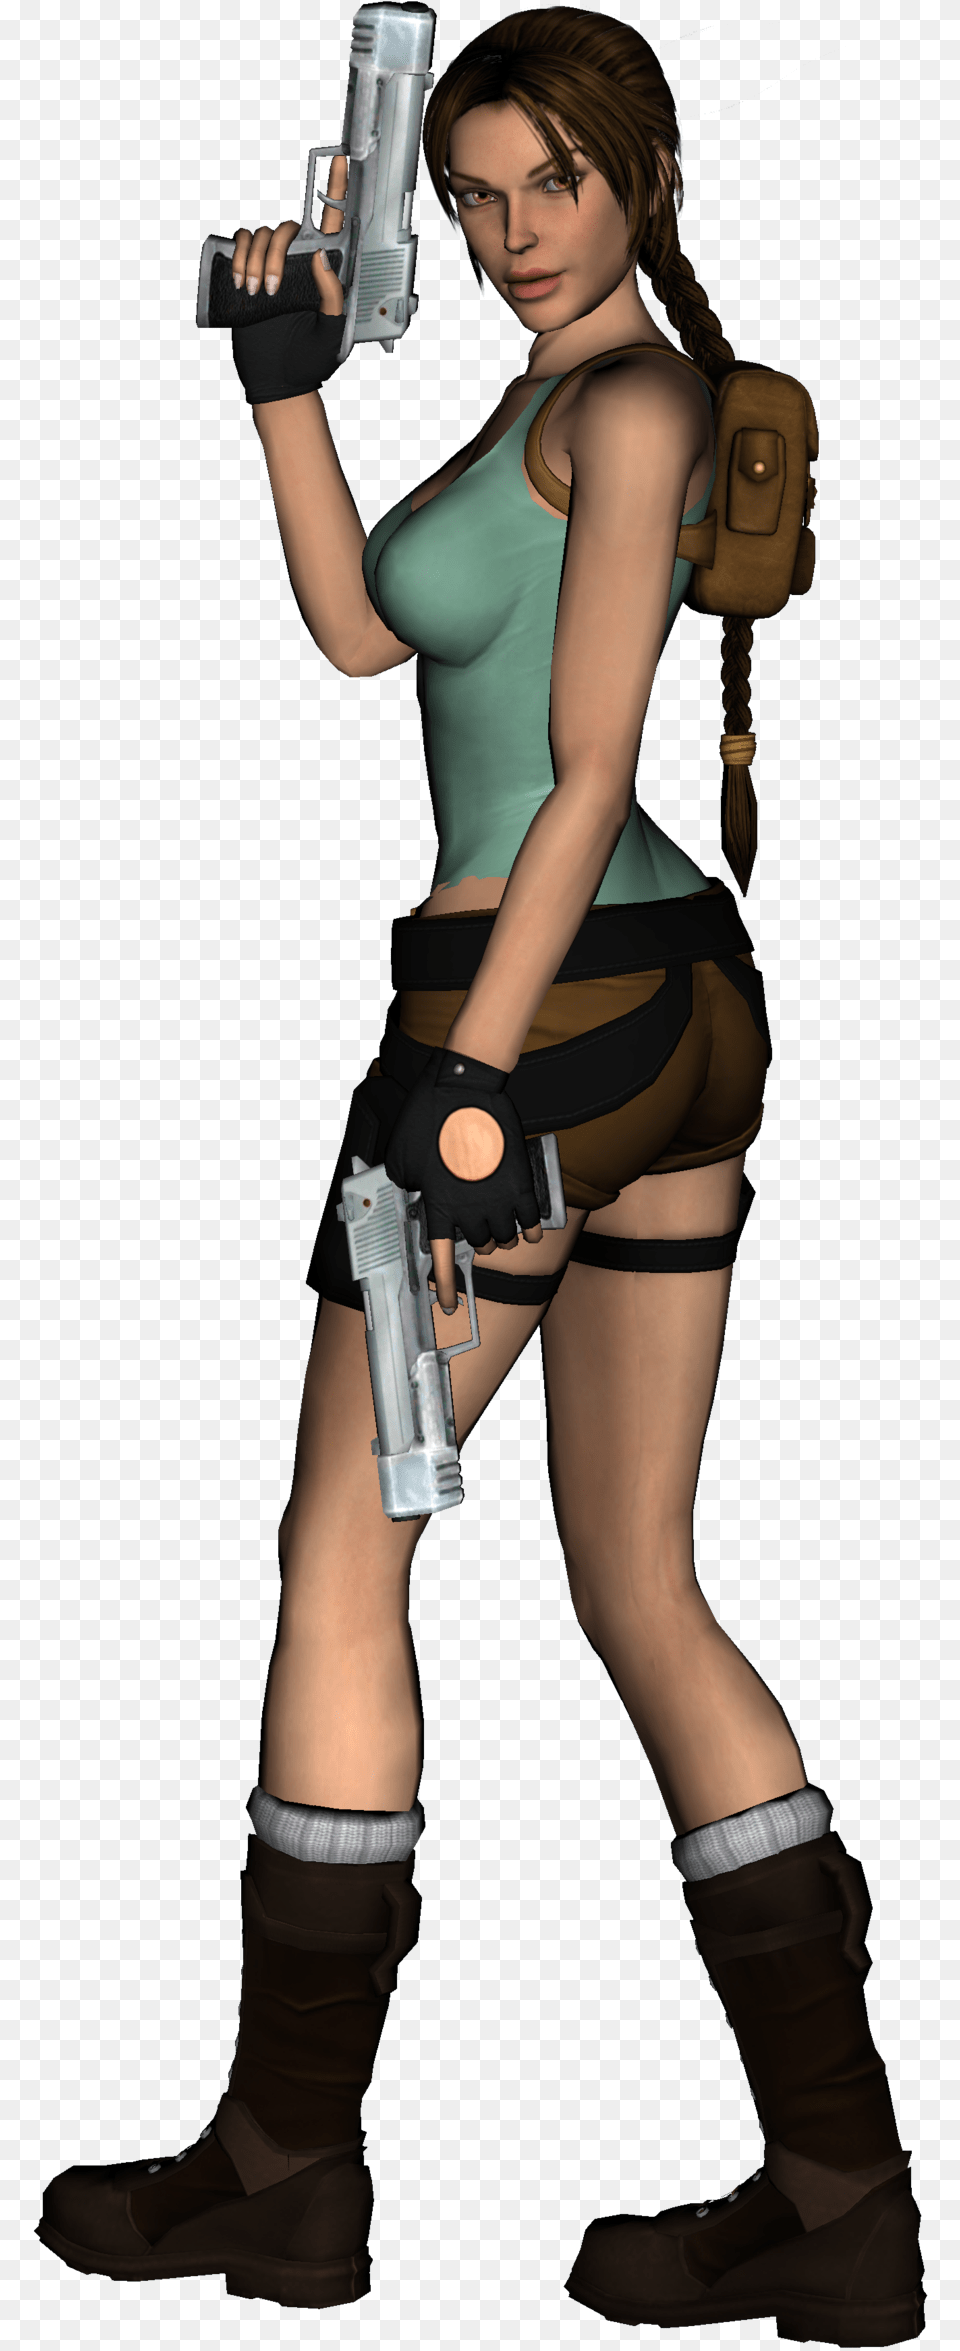 Lara Croft Lara Croft White Background, Gun, Clothing, Costume, Weapon Free Png